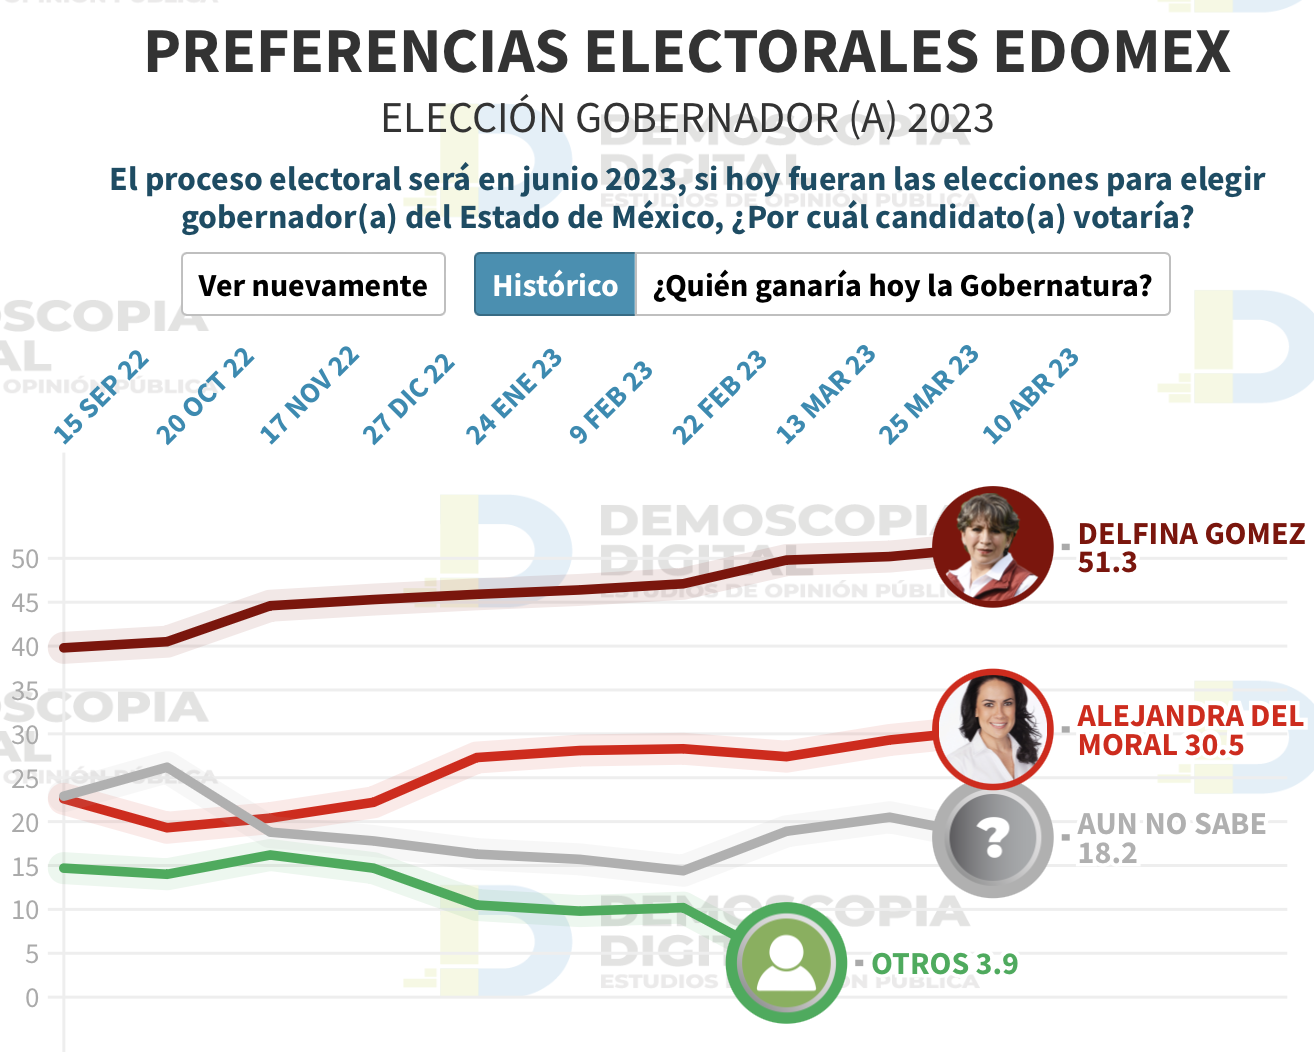 La tendencia de las encuestas de Demoscopia Digital colocan a Delfina Gómez como la candidata más popular desde septiembre del 2022.